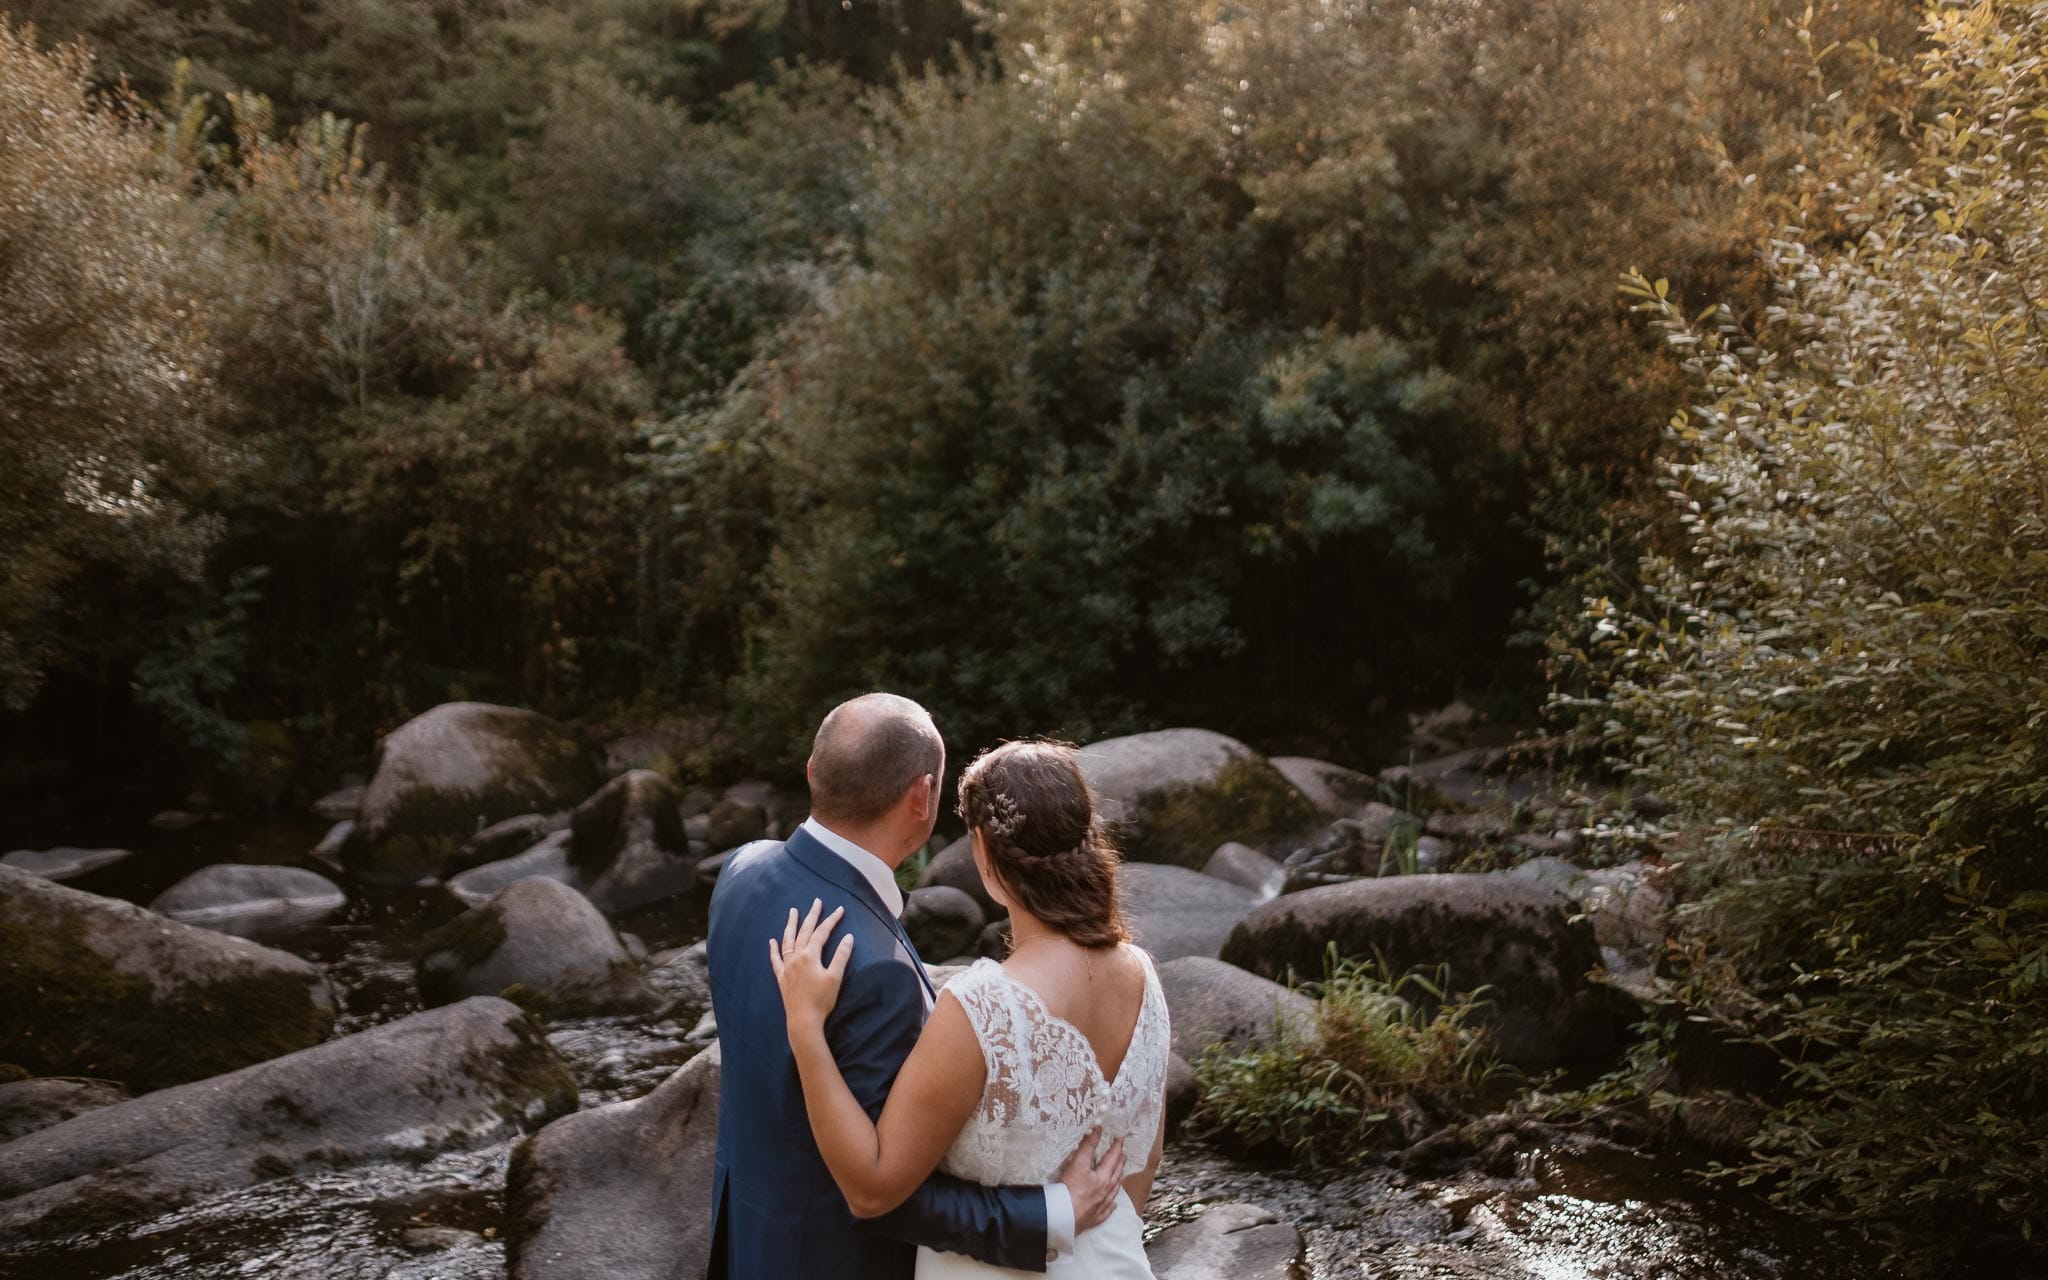 Séance couple après mariage naturelle et romantique près d’une rivière dans une vallée de roches en Vendée par Geoffrey Arnoldy photographe